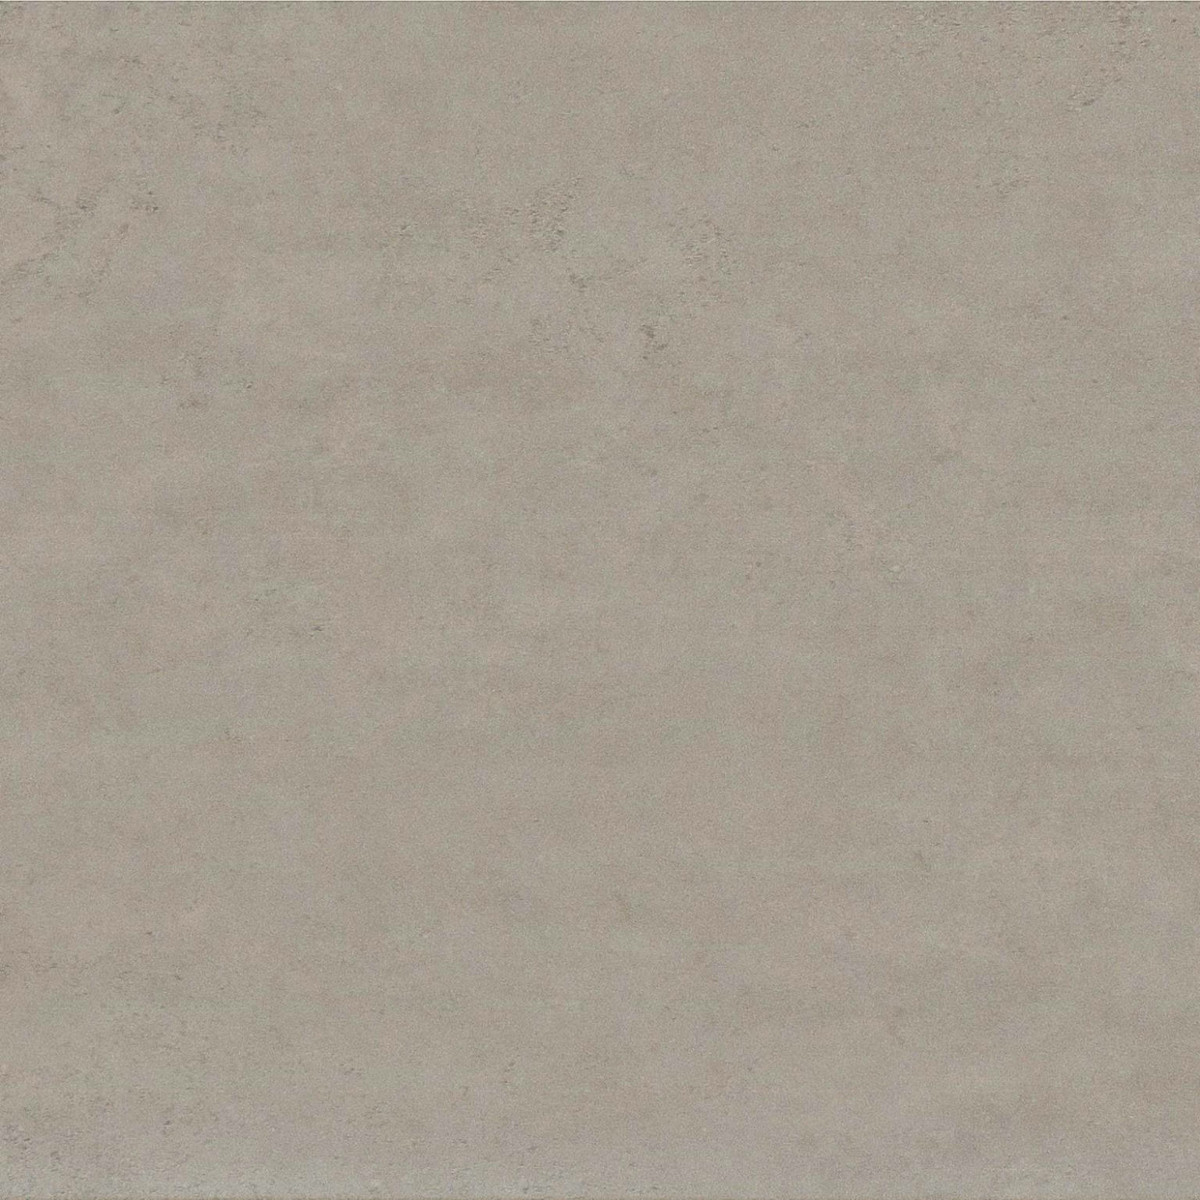 SOHO - Carrelage Sol Effet béton - Grey 45x45 - Réf.203101